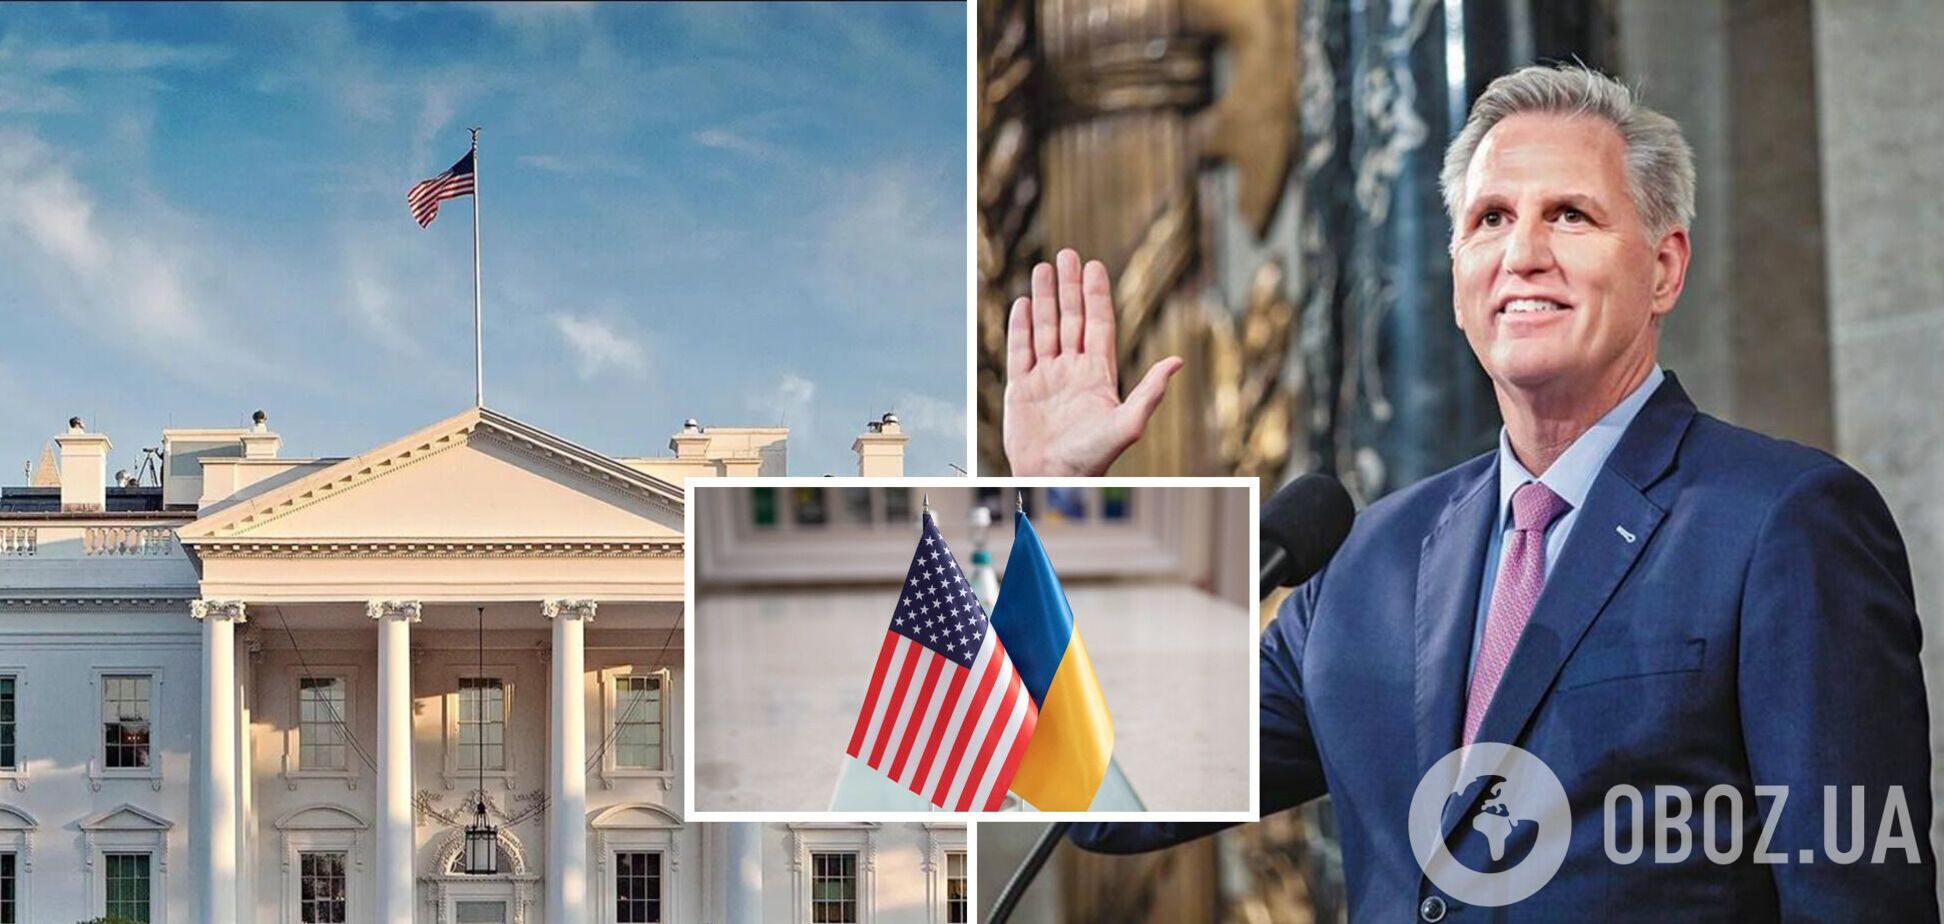 'Мы рады это слышать': Белый дом похвалил спикера-республиканца Маккарти за слова в поддержку Украины